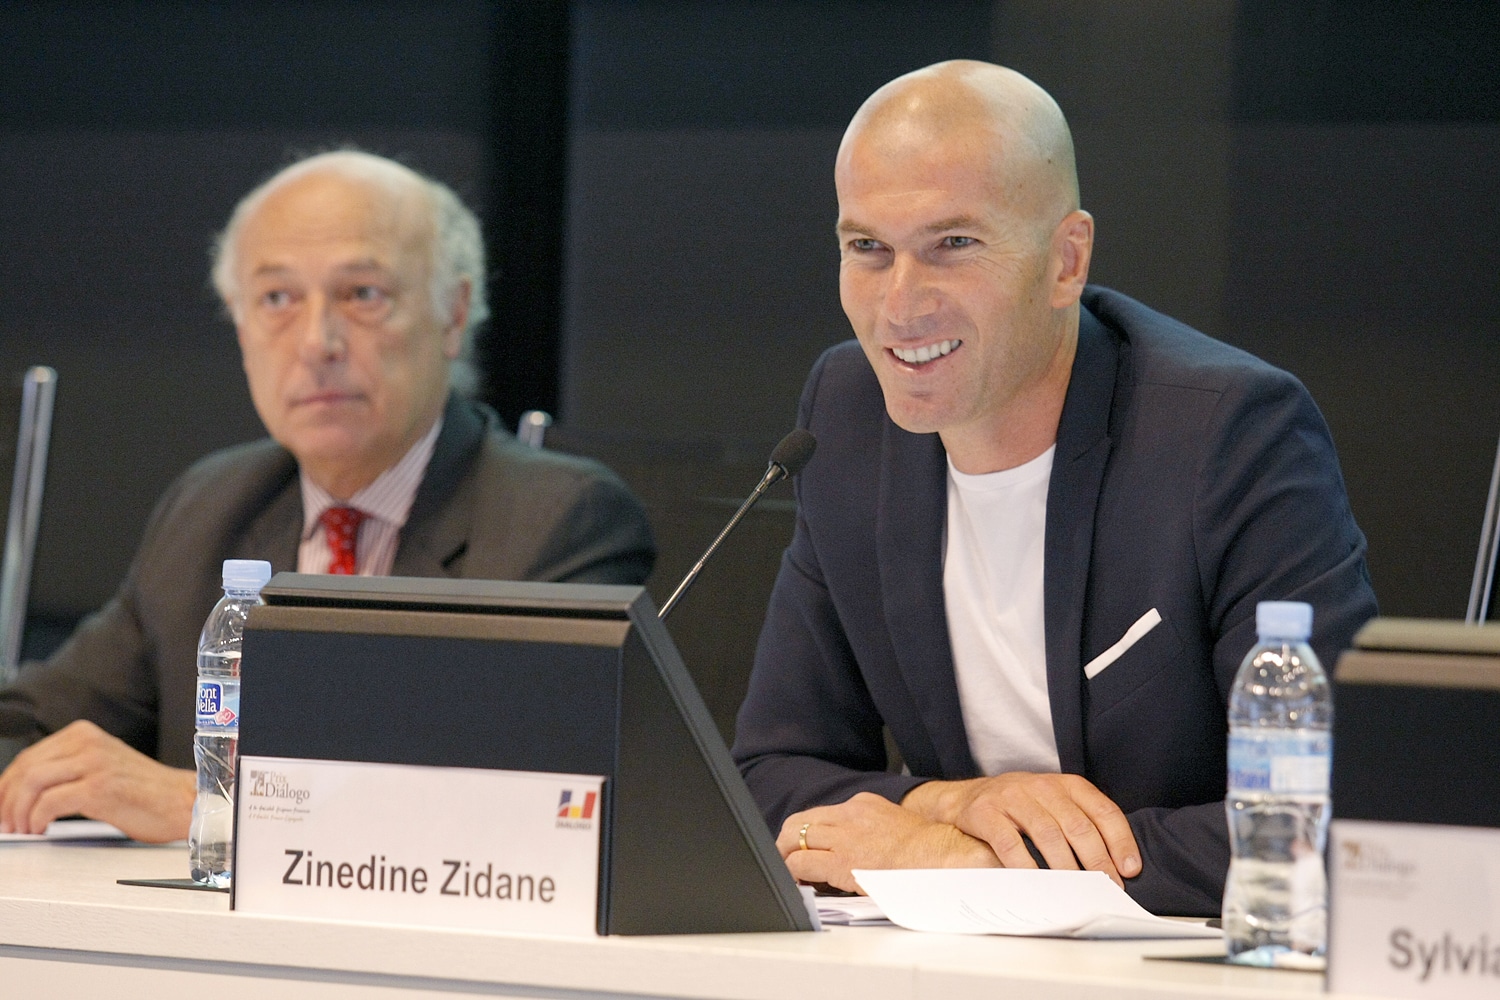 Souhaitez-vous entrer en contact avec Zinedine Zidane ?
 - Contacter ZINEDINE ZIDANE | Écrire à #ZinedineZidane